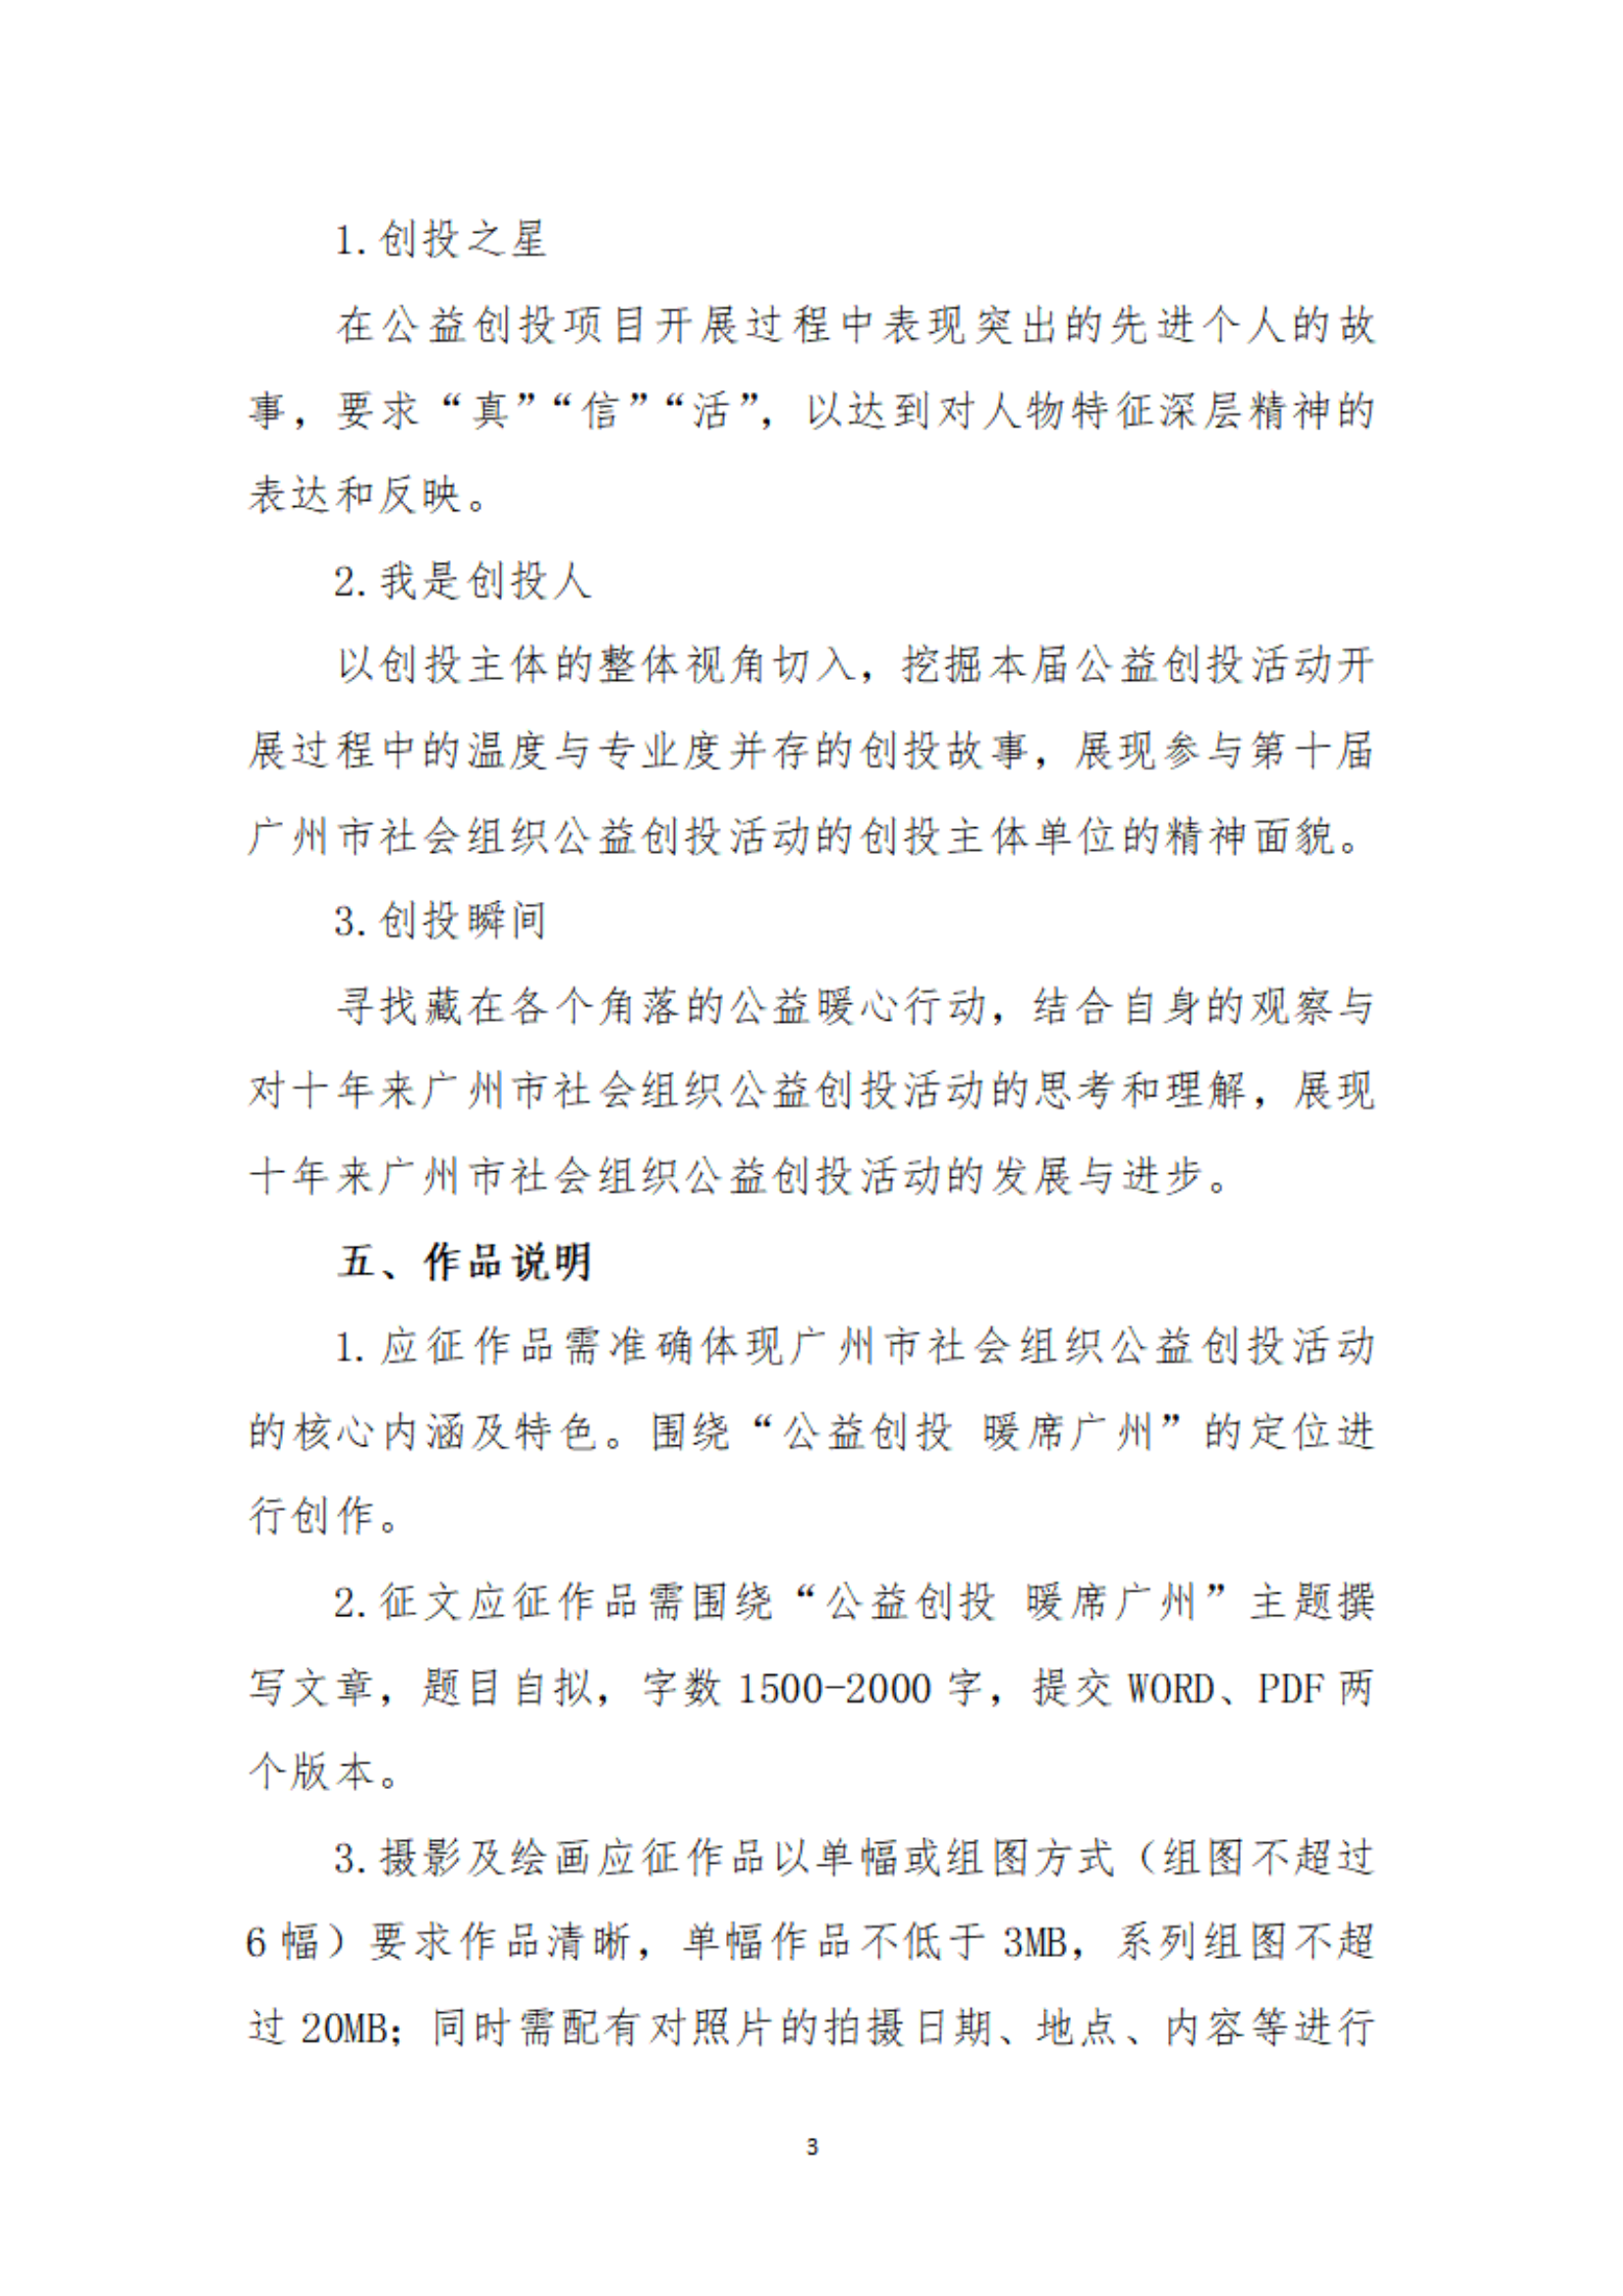 【以此為(wèi)准】关于举办广州市社会组织公益创投活动“公益创投 暖席广州”主题征文(wén)和摄影、短视频大赛的通知_02.png